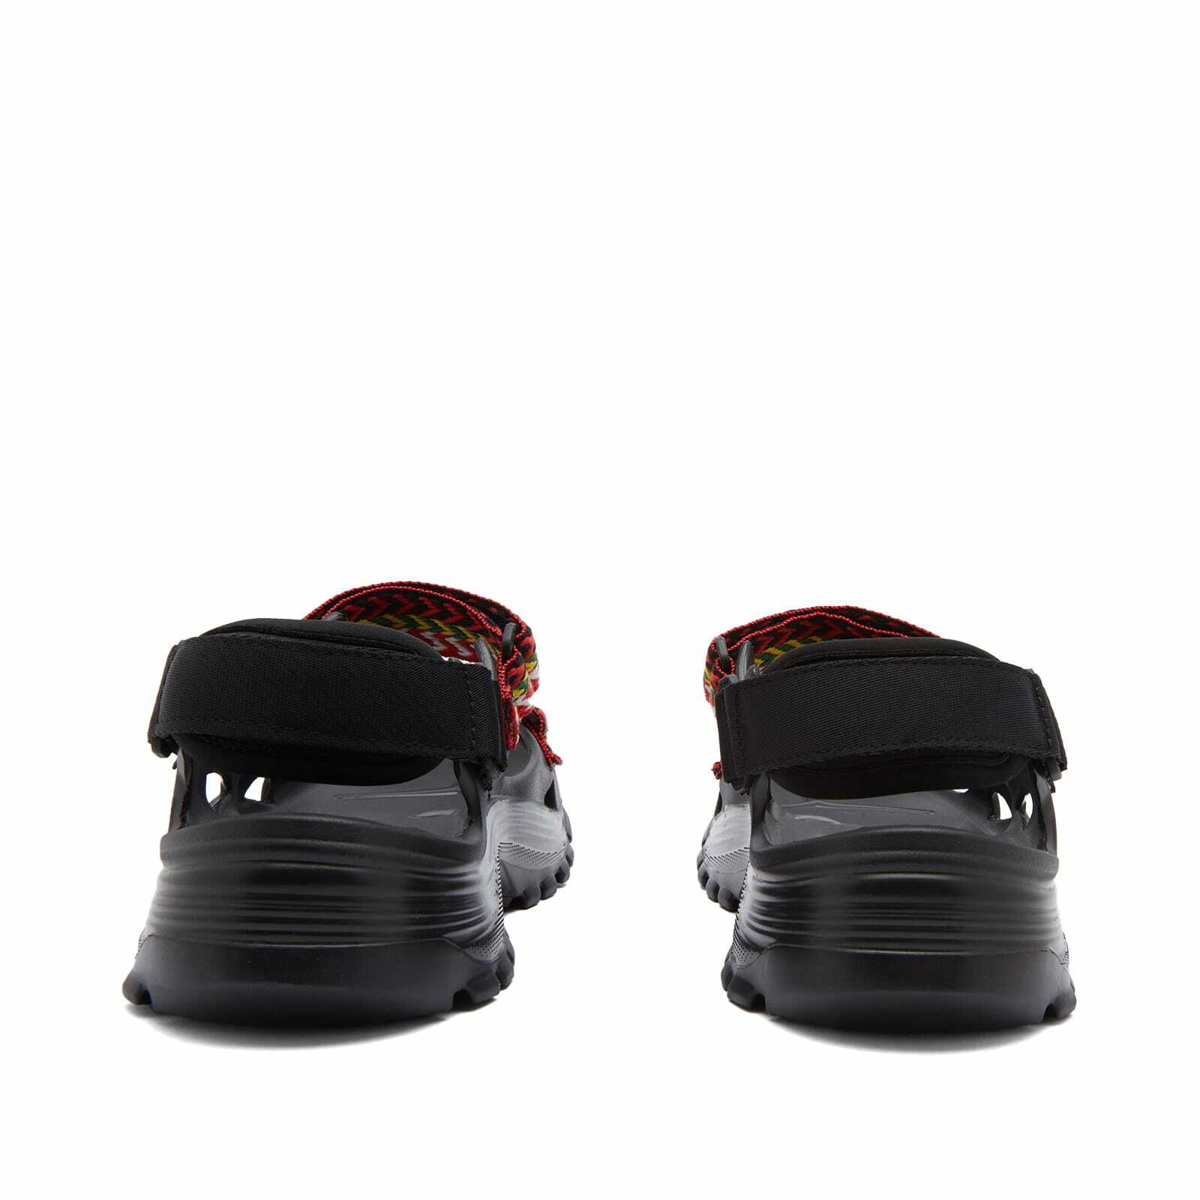 Lanvin Men's x Suicoke Curb Sandal in Black Lanvin